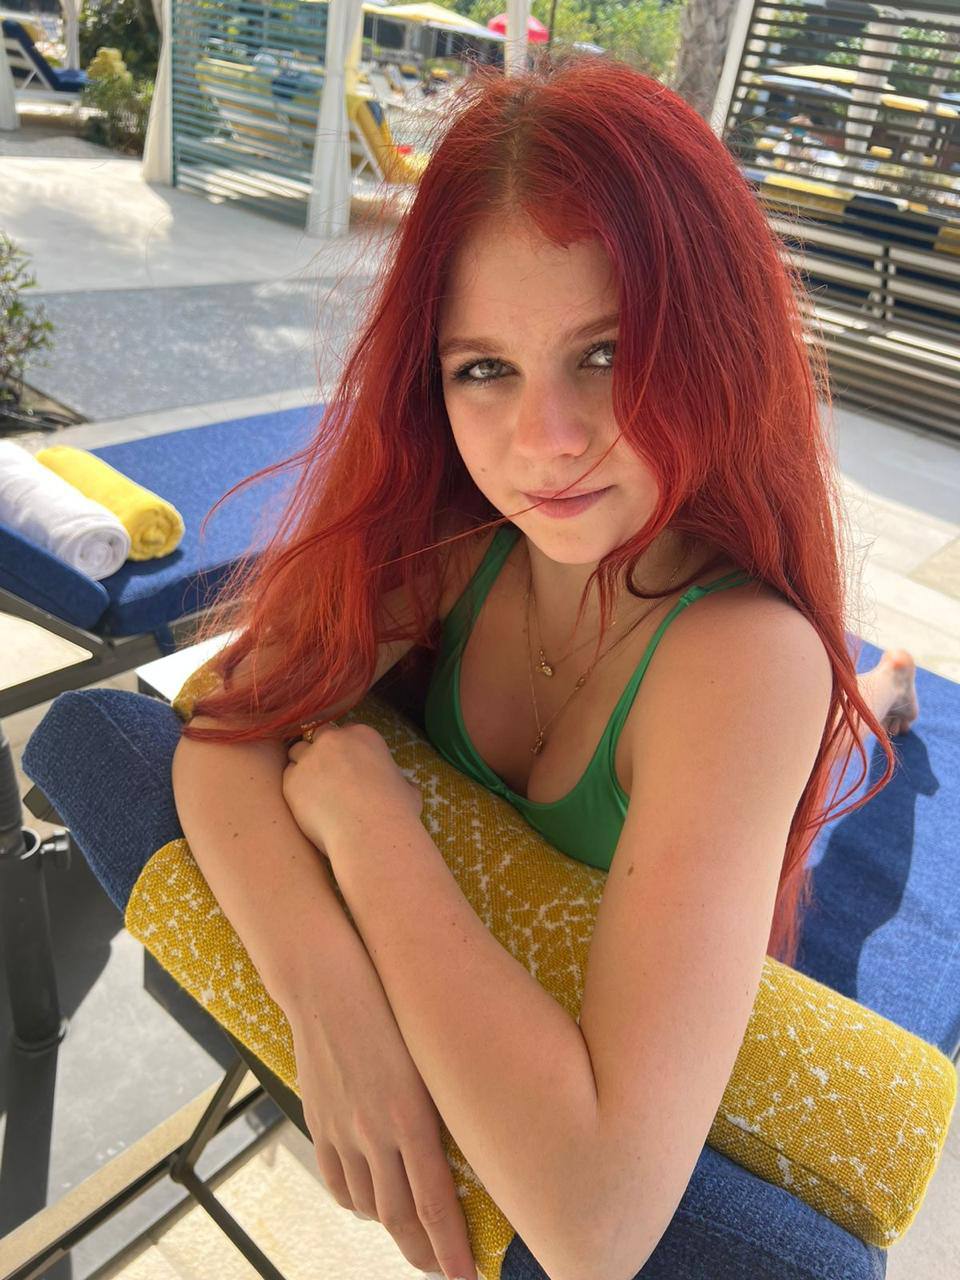 Юная чемпионка по фигурному катанию Александра Трусова побаловала поклонников фотосессией в купальнике на дубайском пляже